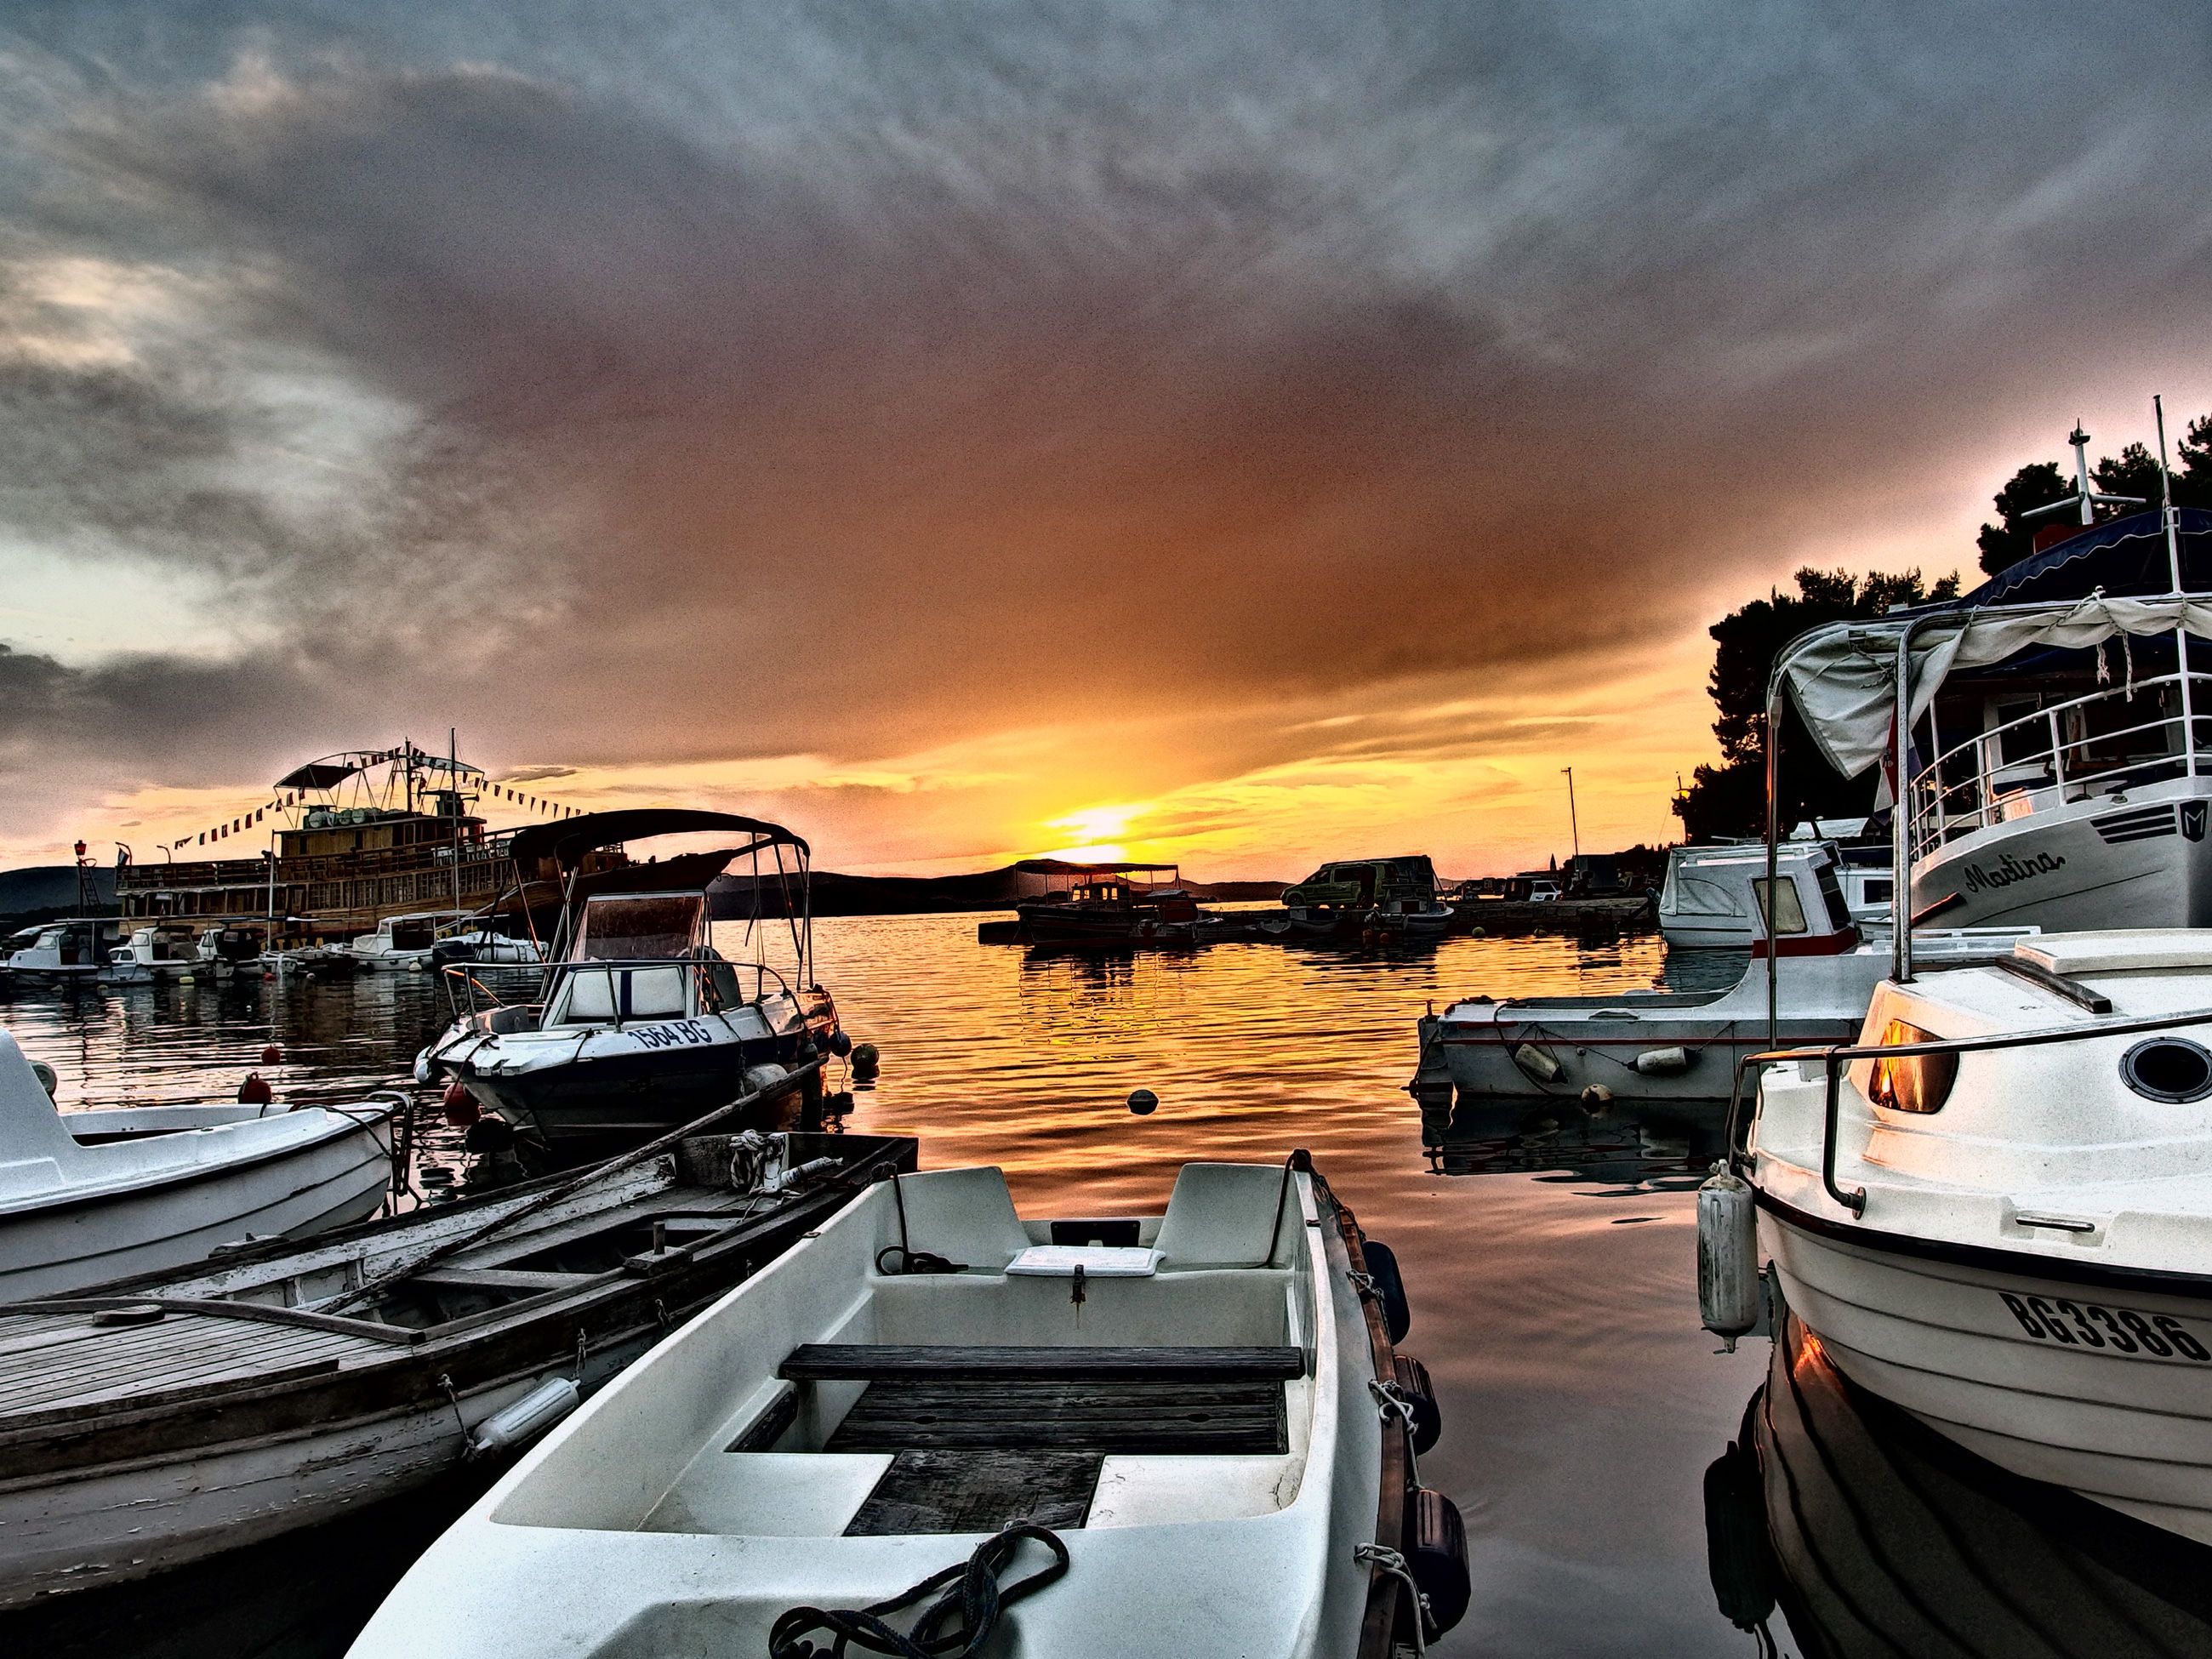 Sunset And Boats - LibreShot